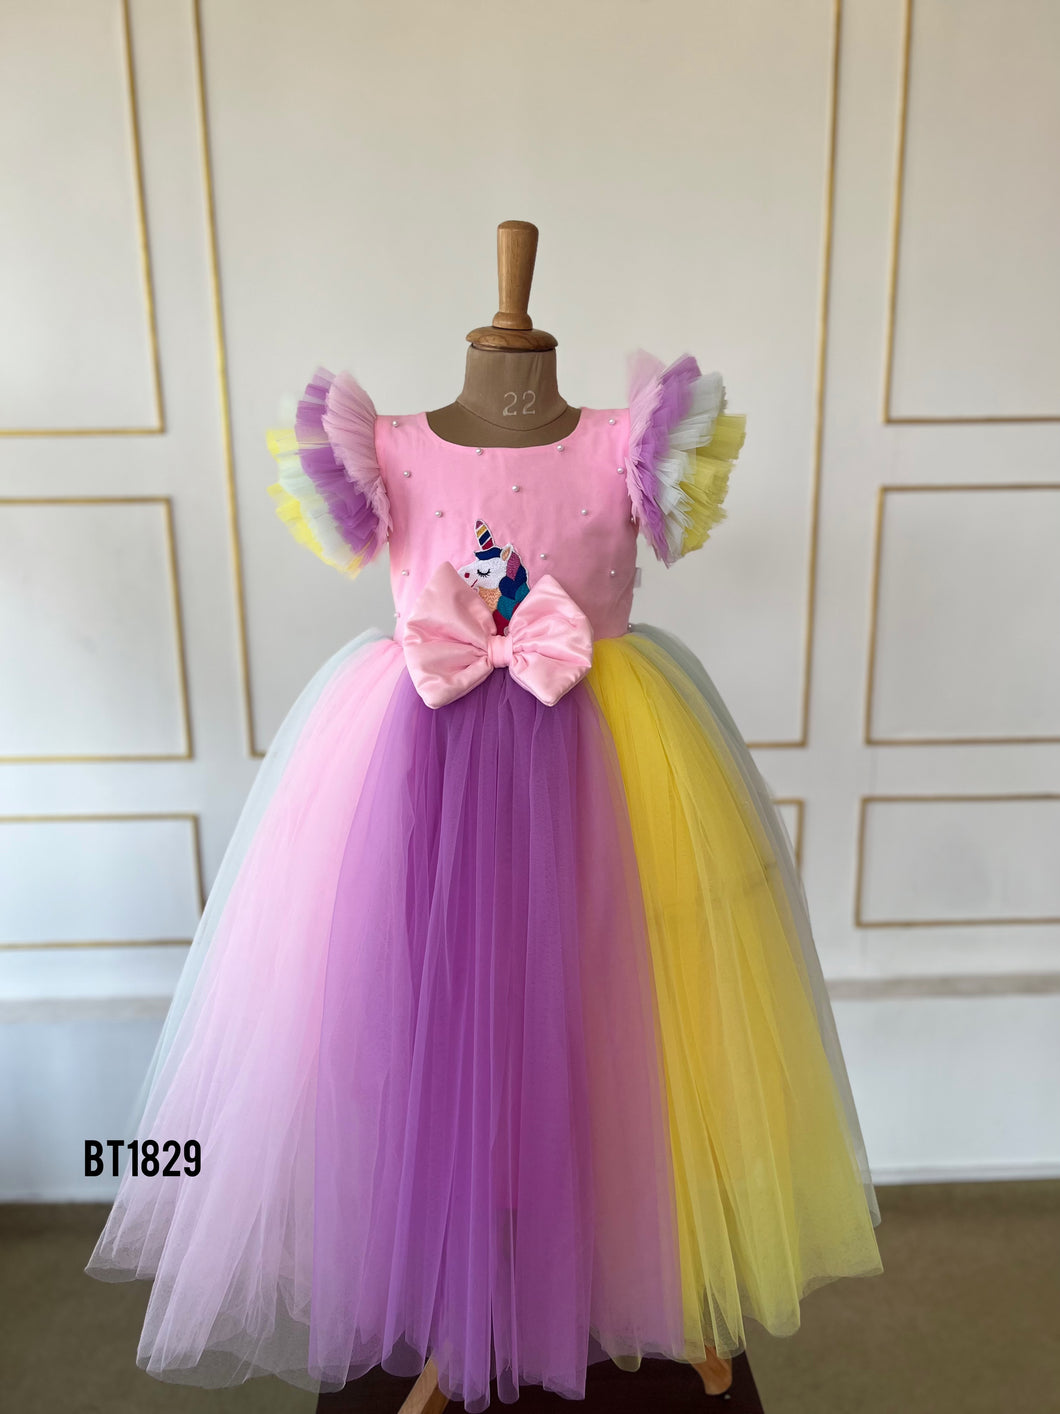 BT1829 Magical Whimsy Princess Dress - A Fairytale in Every Thread